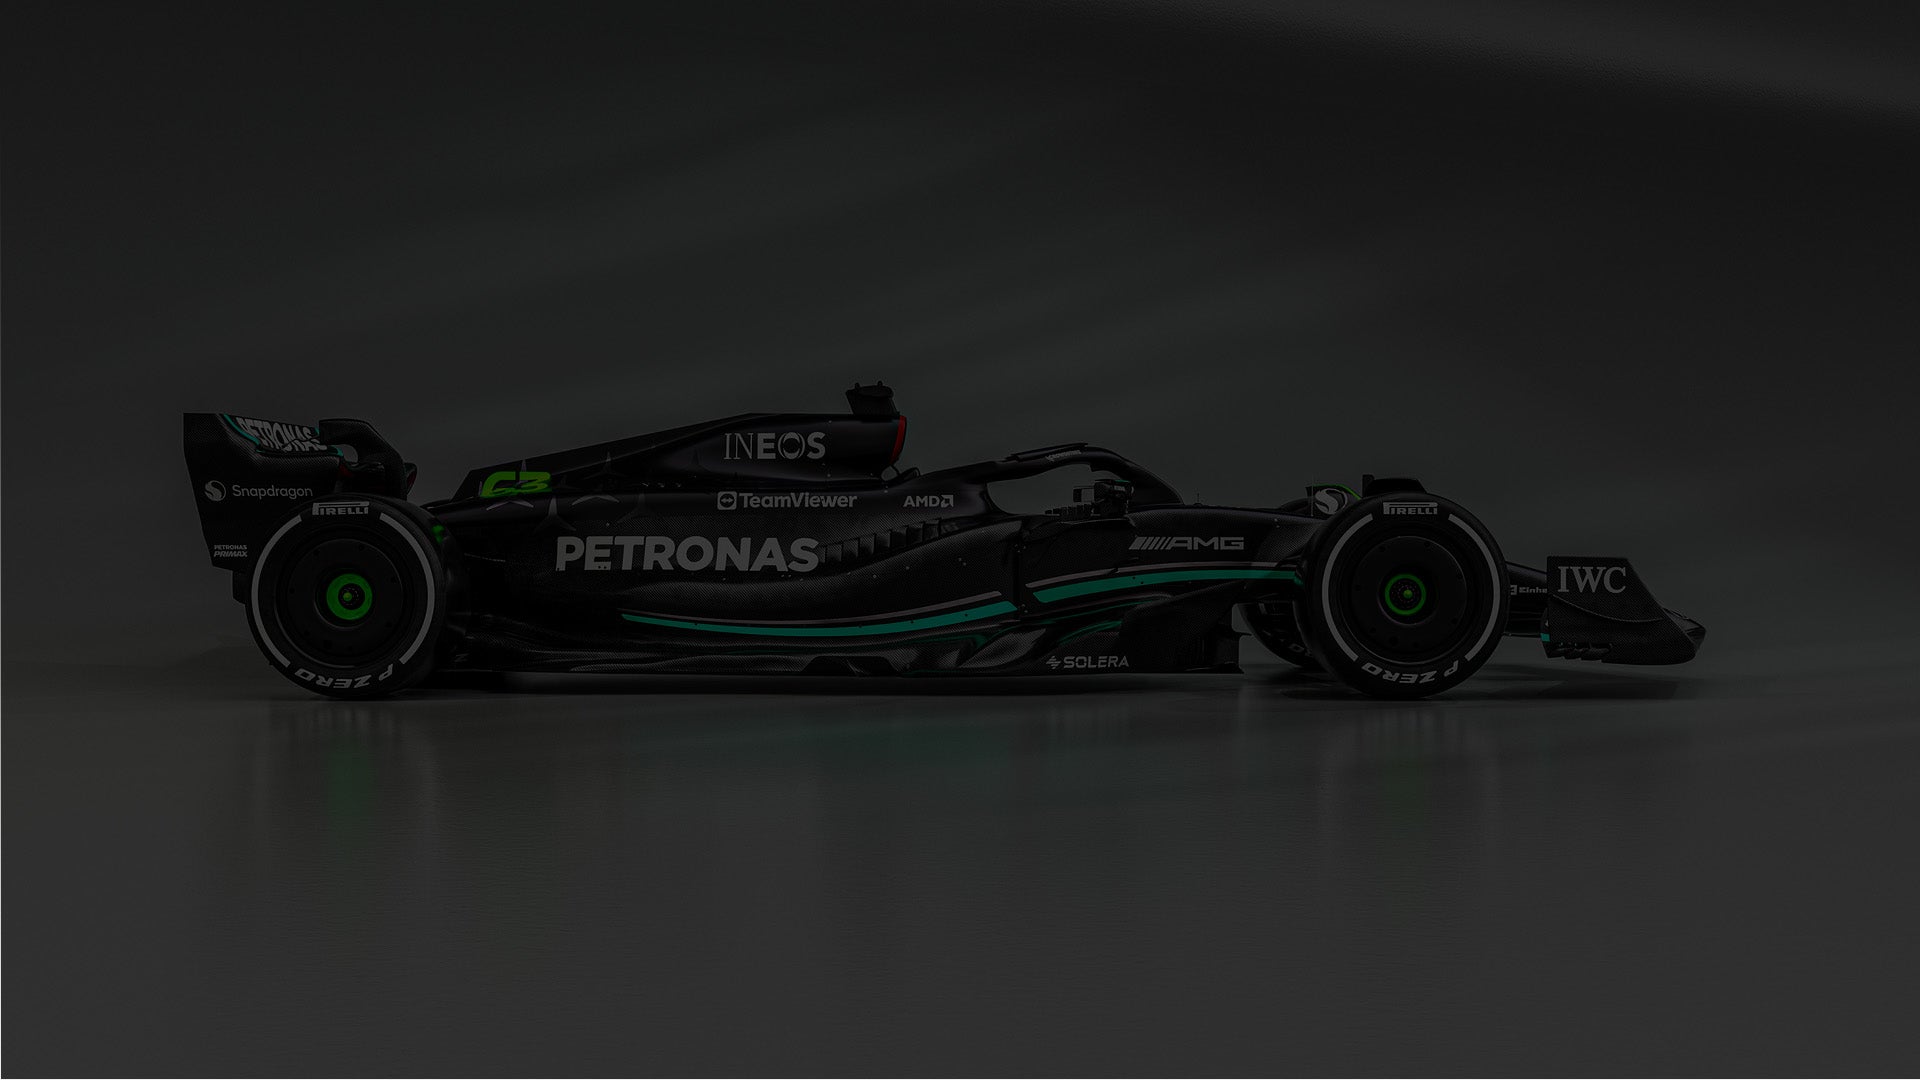 Mercedes AMG Petronas F1 Graffiti Mug